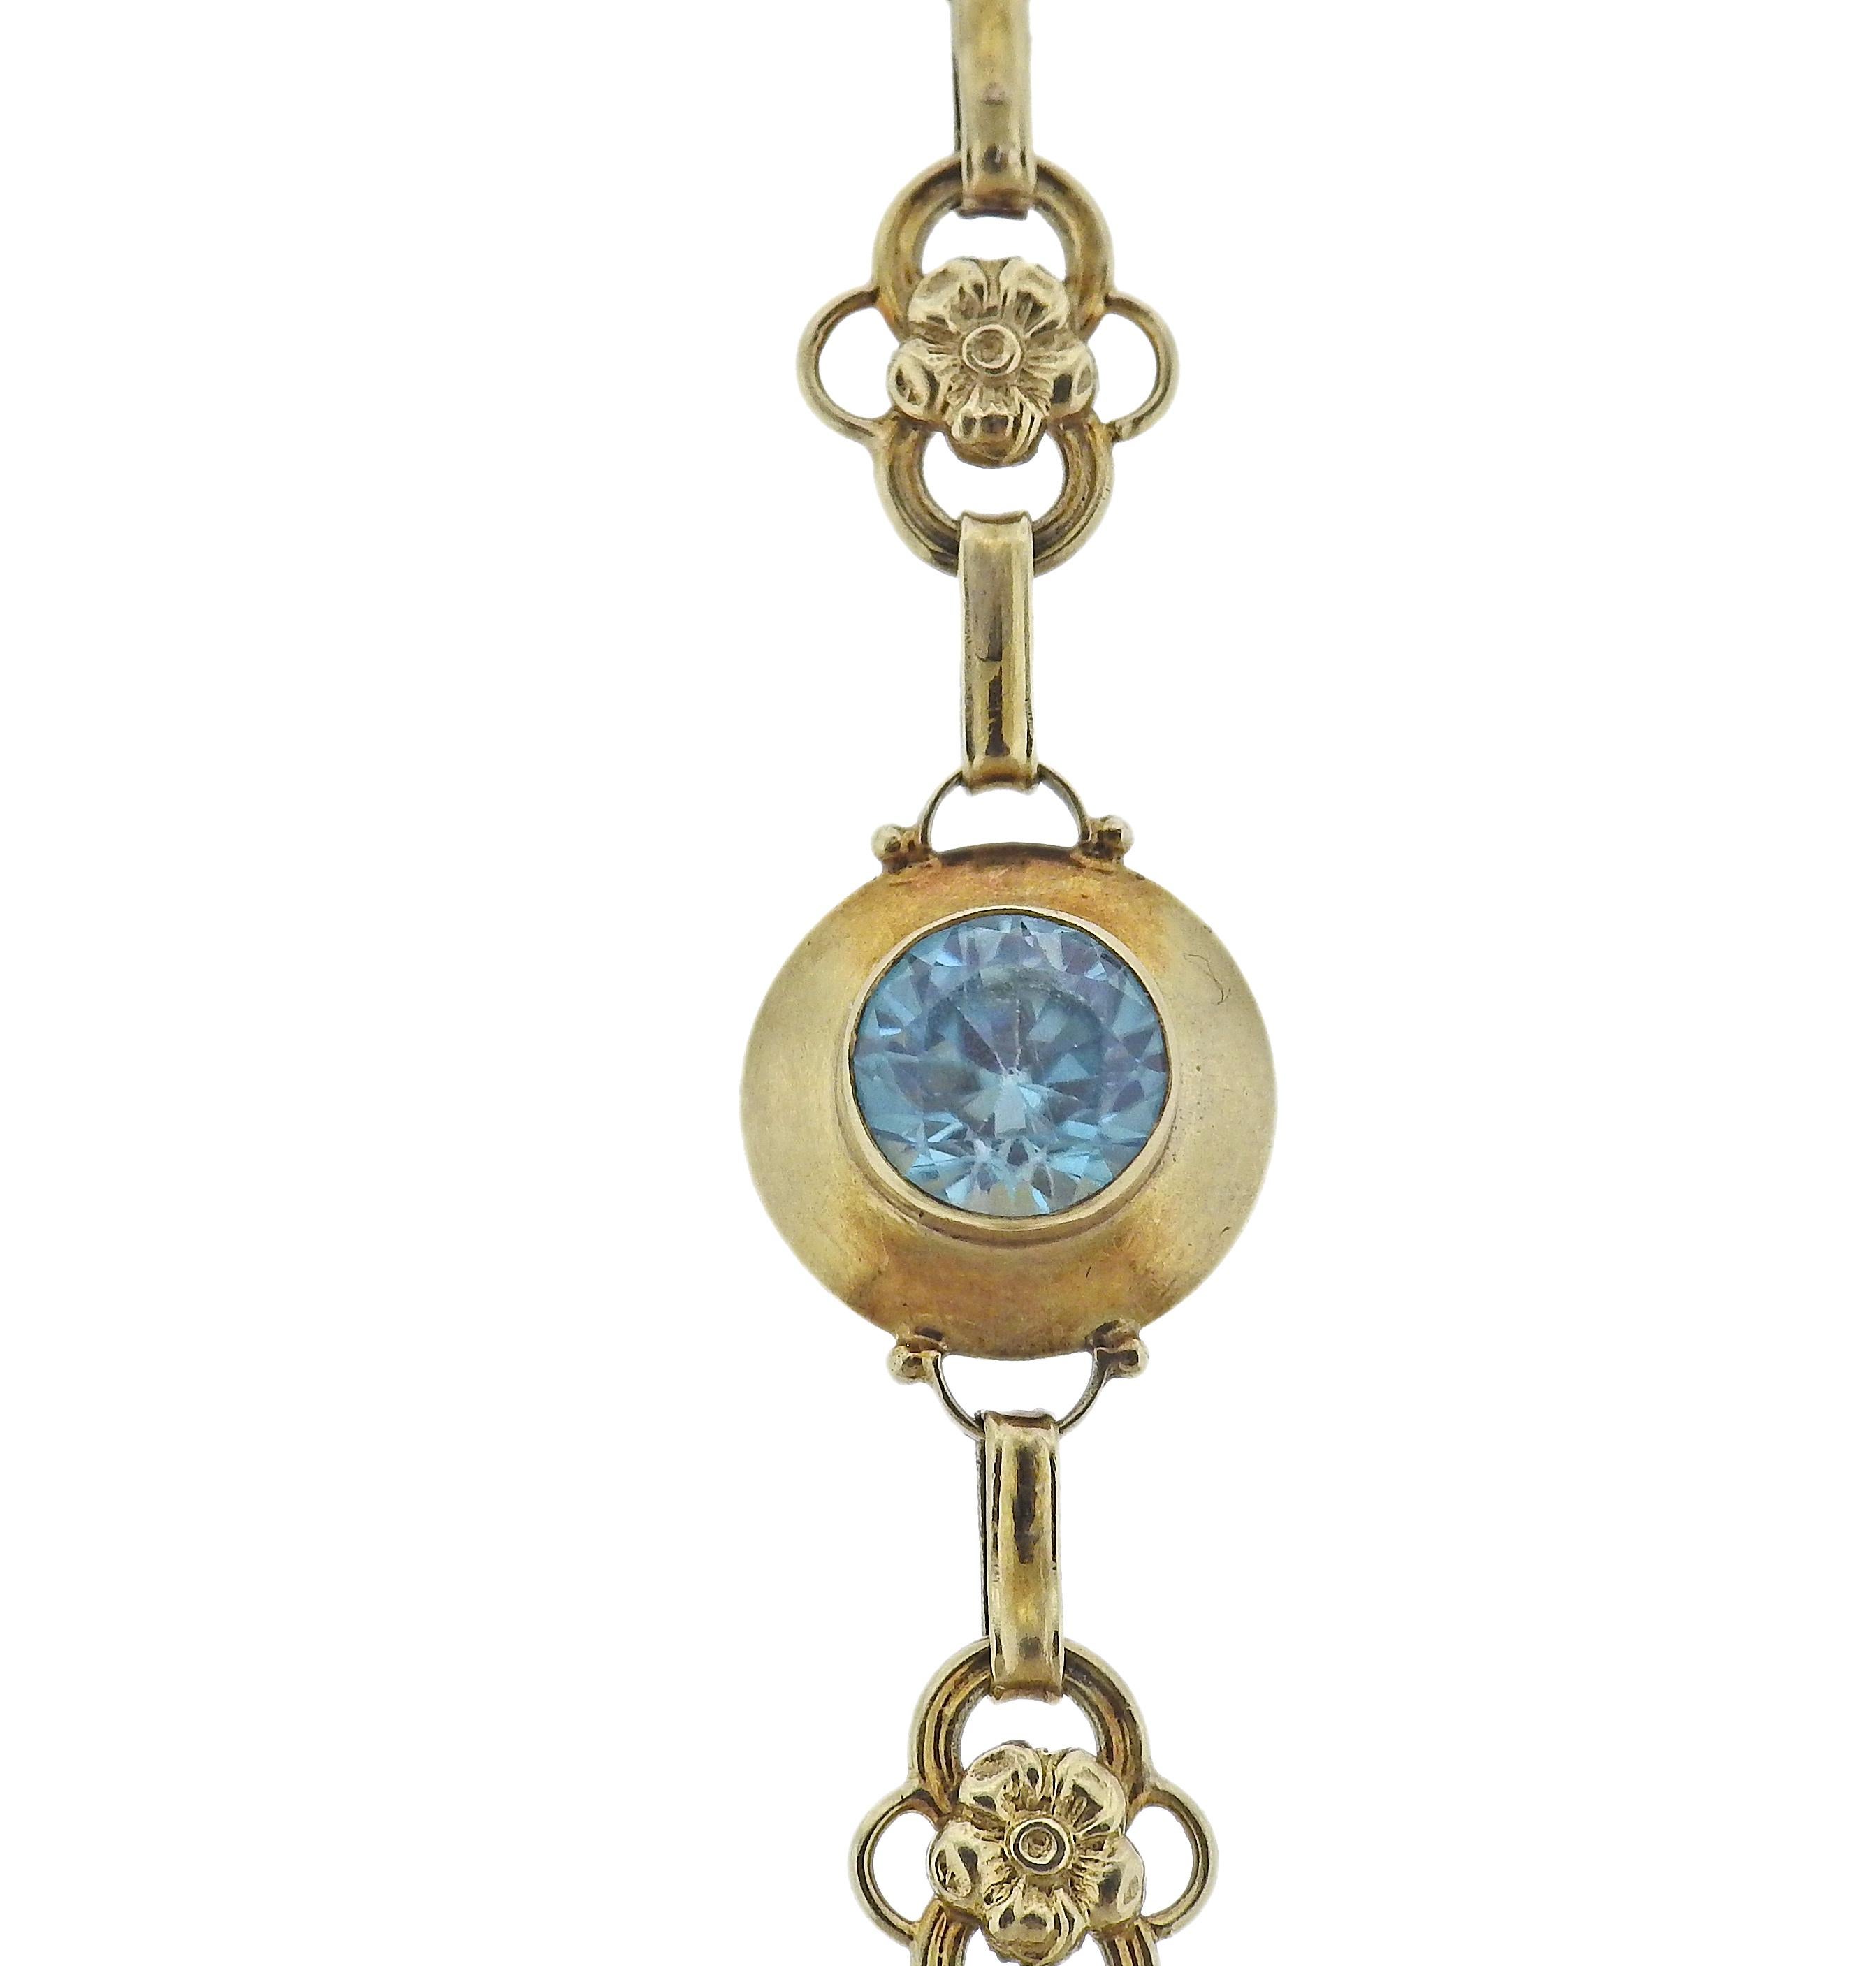 Bracelet antique en or 14k, avec 3 pierres bleues de 6,6 mm. Le bracelet a une longueur de 7 1/8